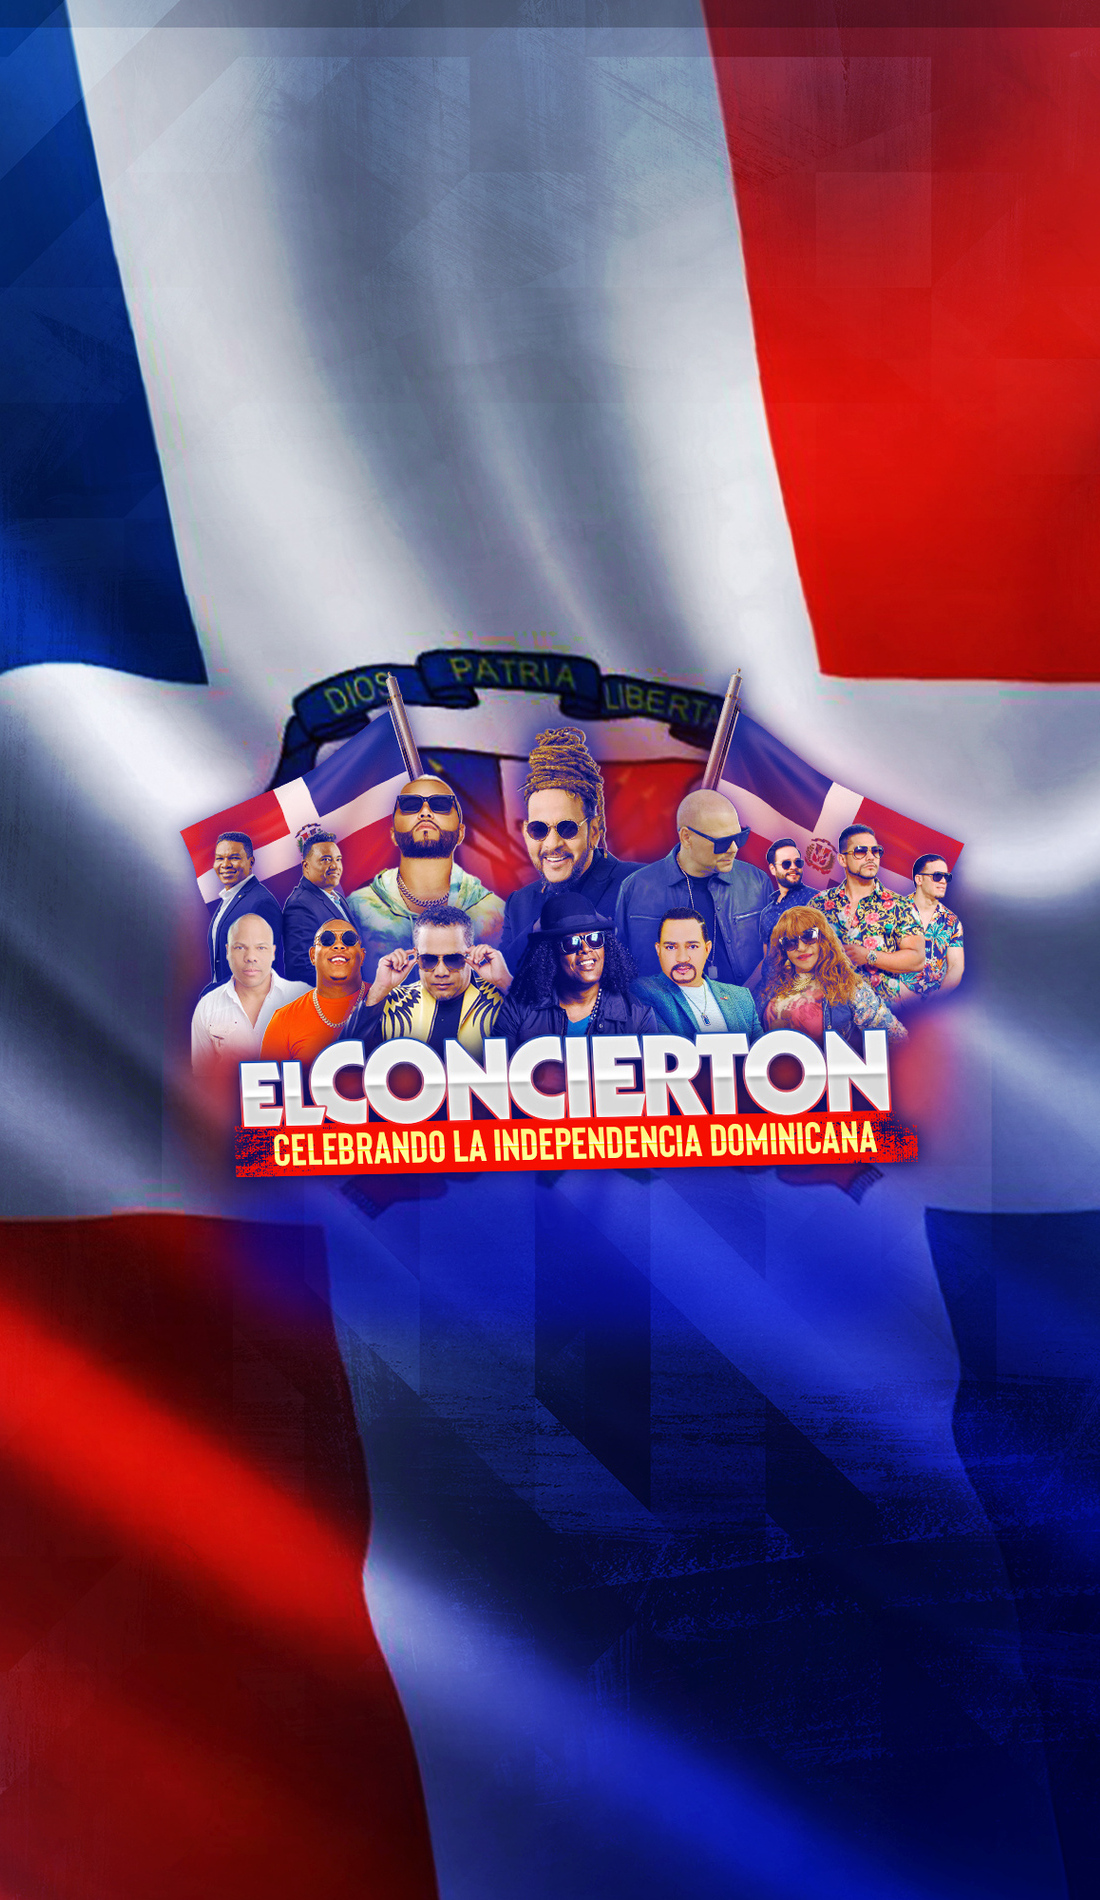 A El Concierton live event